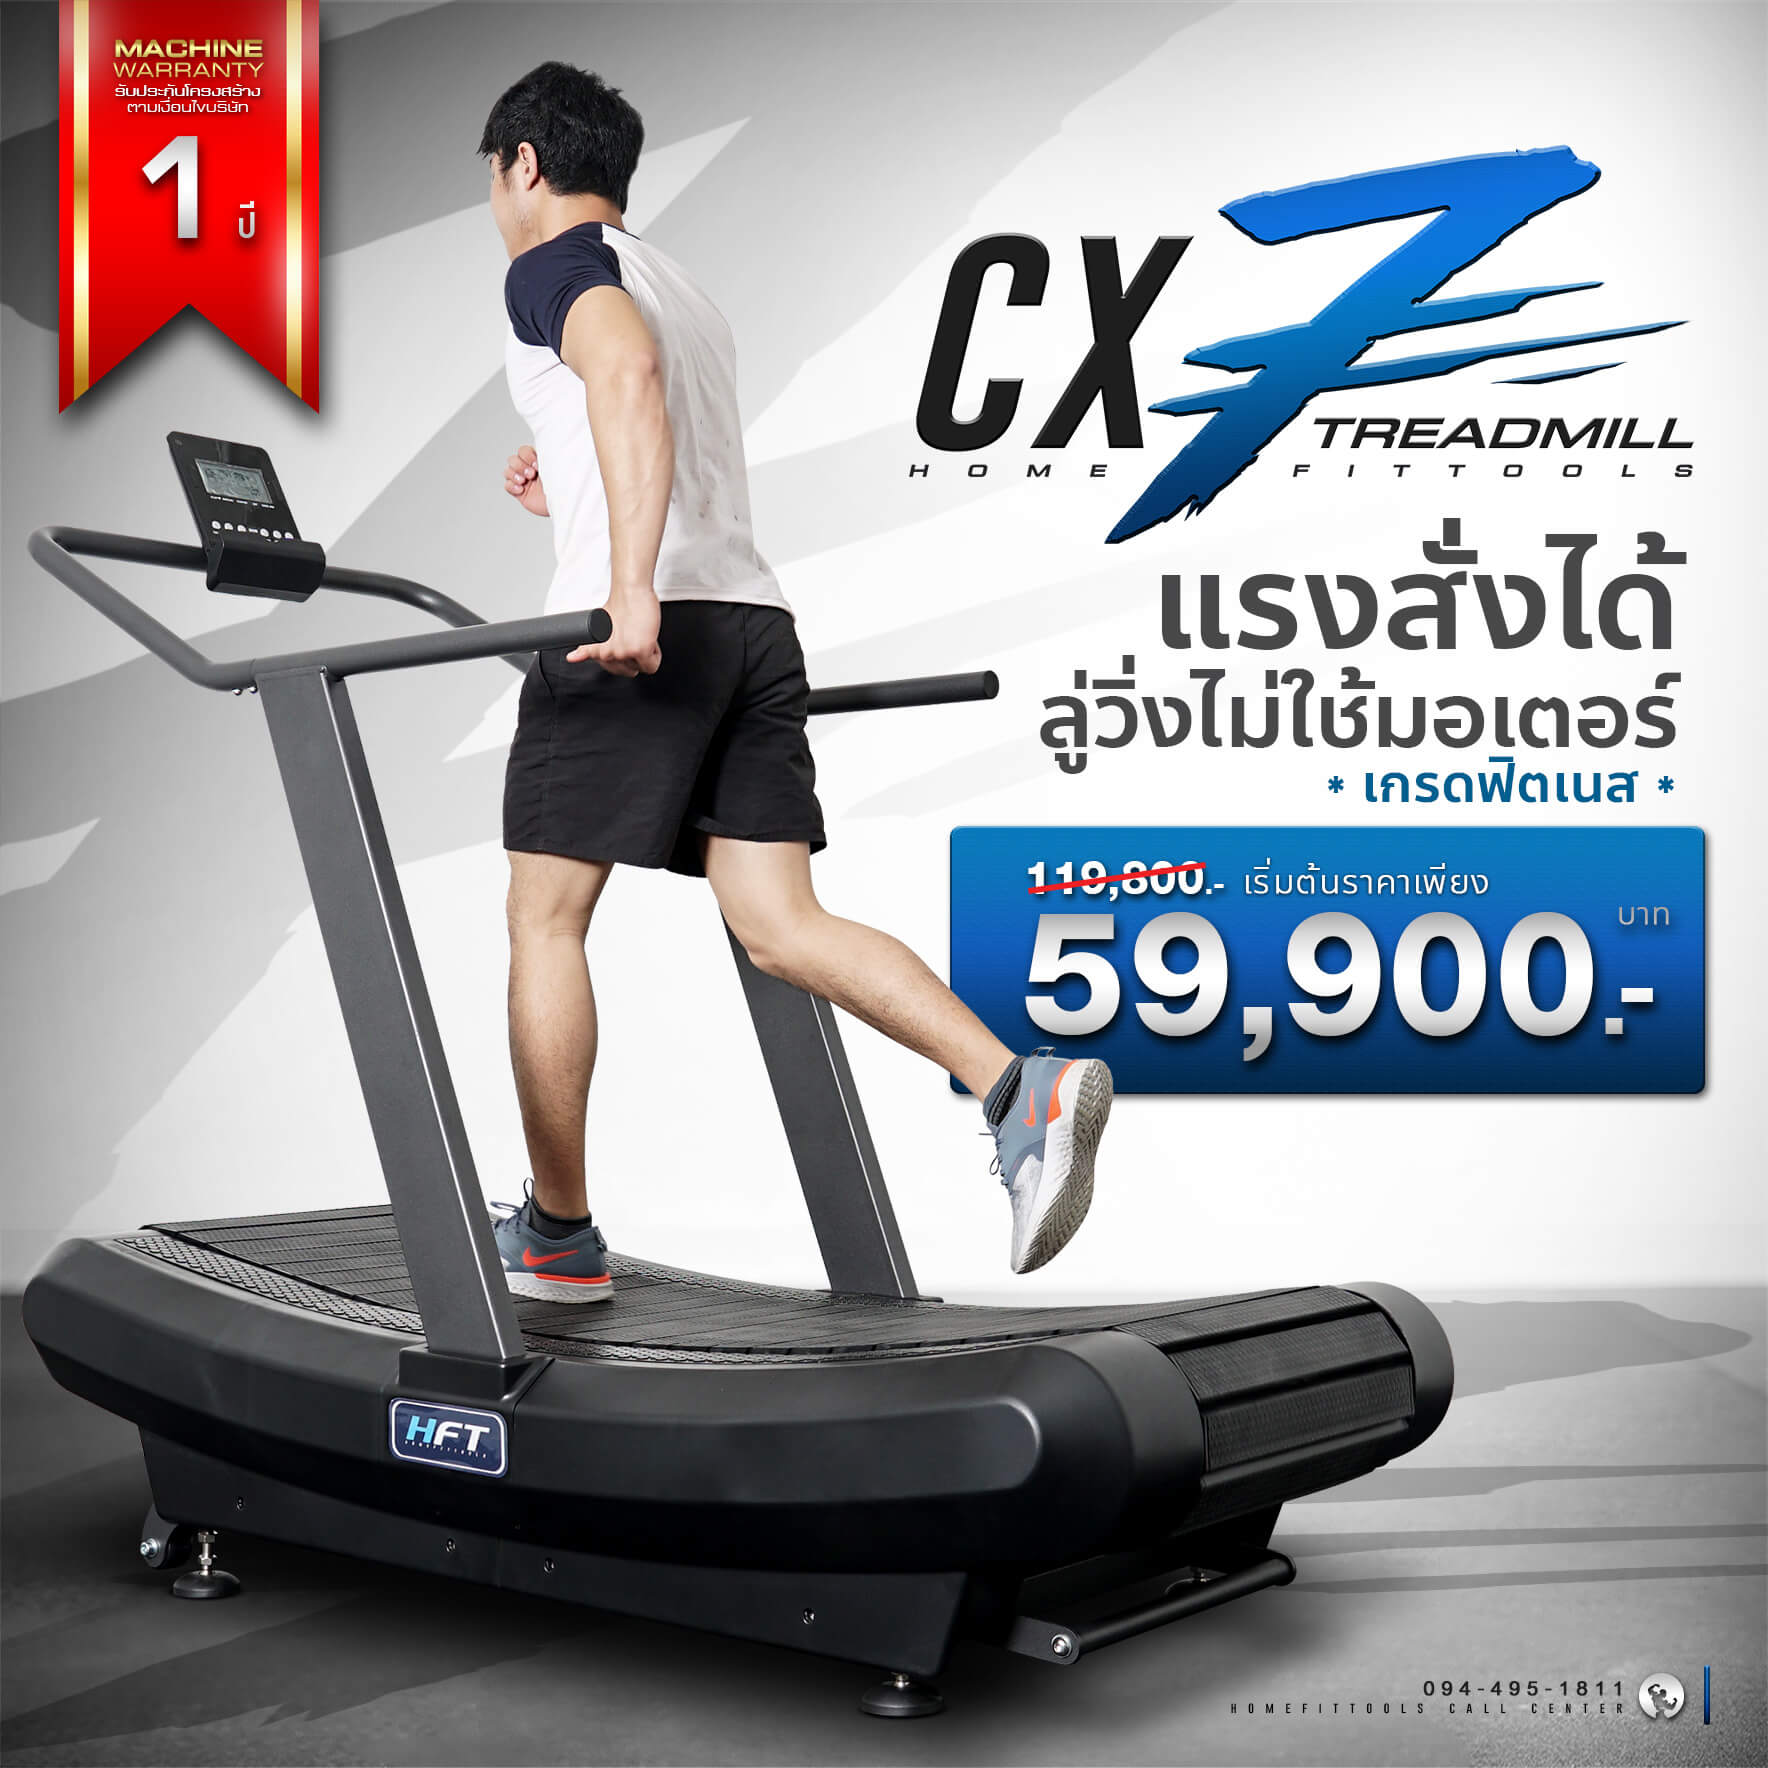 ลู่วิ่ง Treadmill รุ่น CX7 ลู่วิ่งออกกำลังกาย ลู่วิ่งราคาถูก